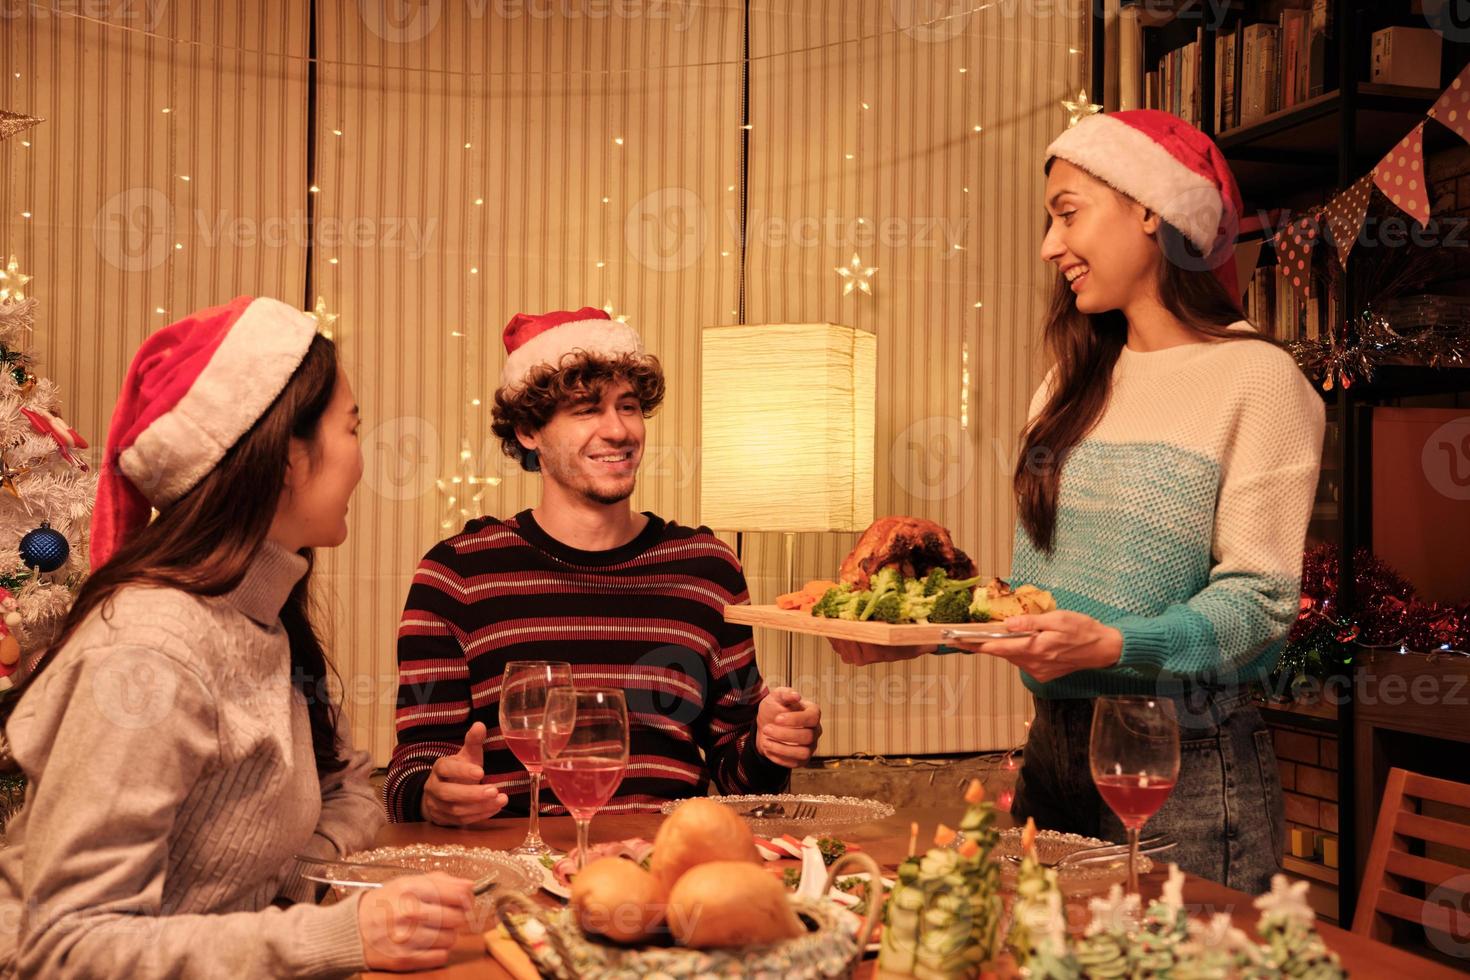 refeição especial para a família, a jovem serve peru assado para amigos e se diverte com drinques durante um jantar na sala de jantar da casa decorada para o festival de natal e a festa de ano novo. foto